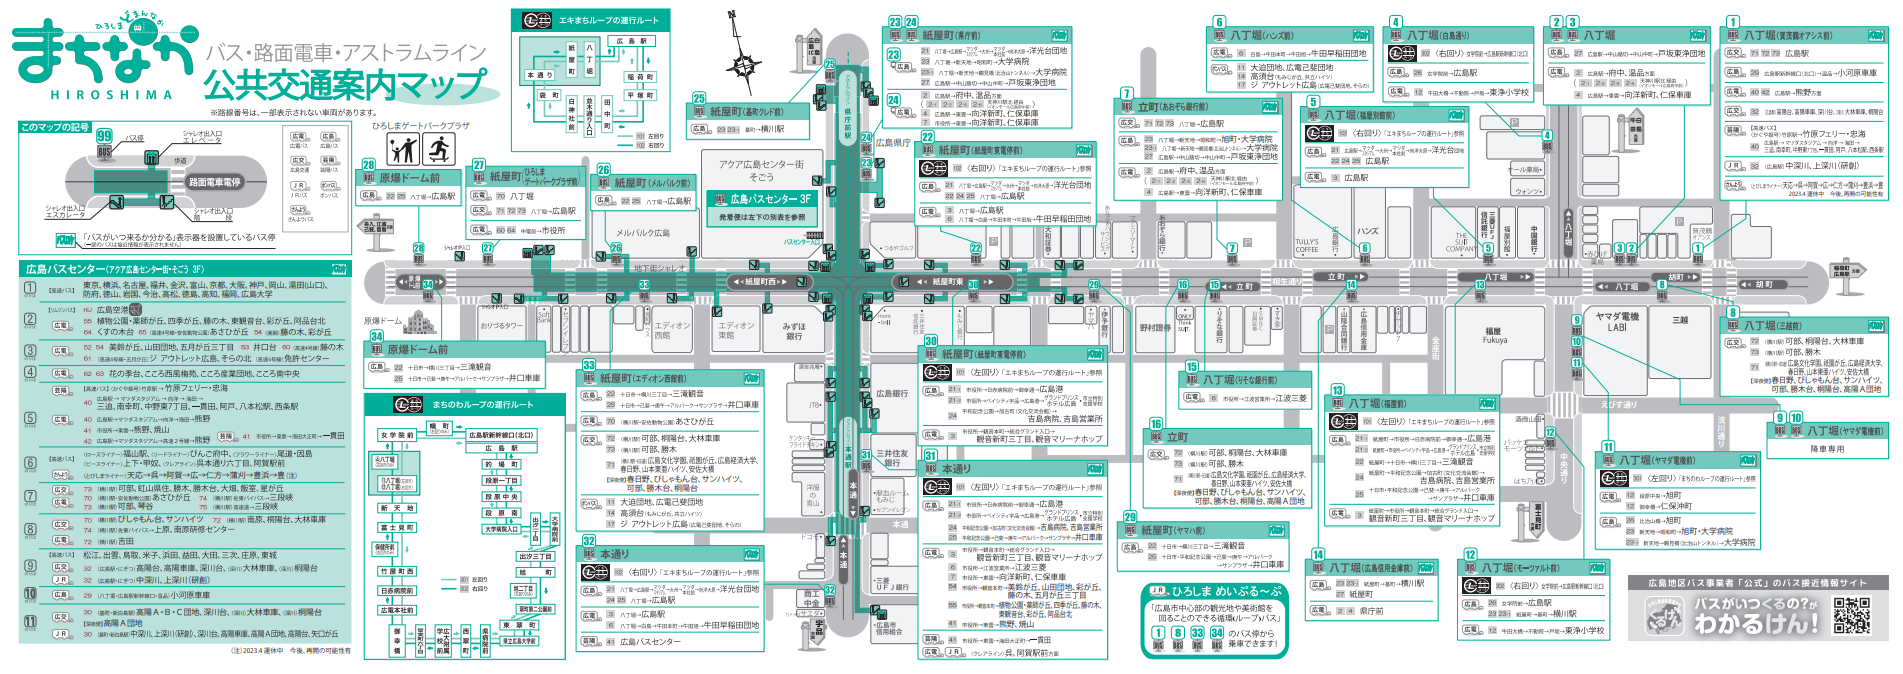 Mapa guía sobre el transporte público 